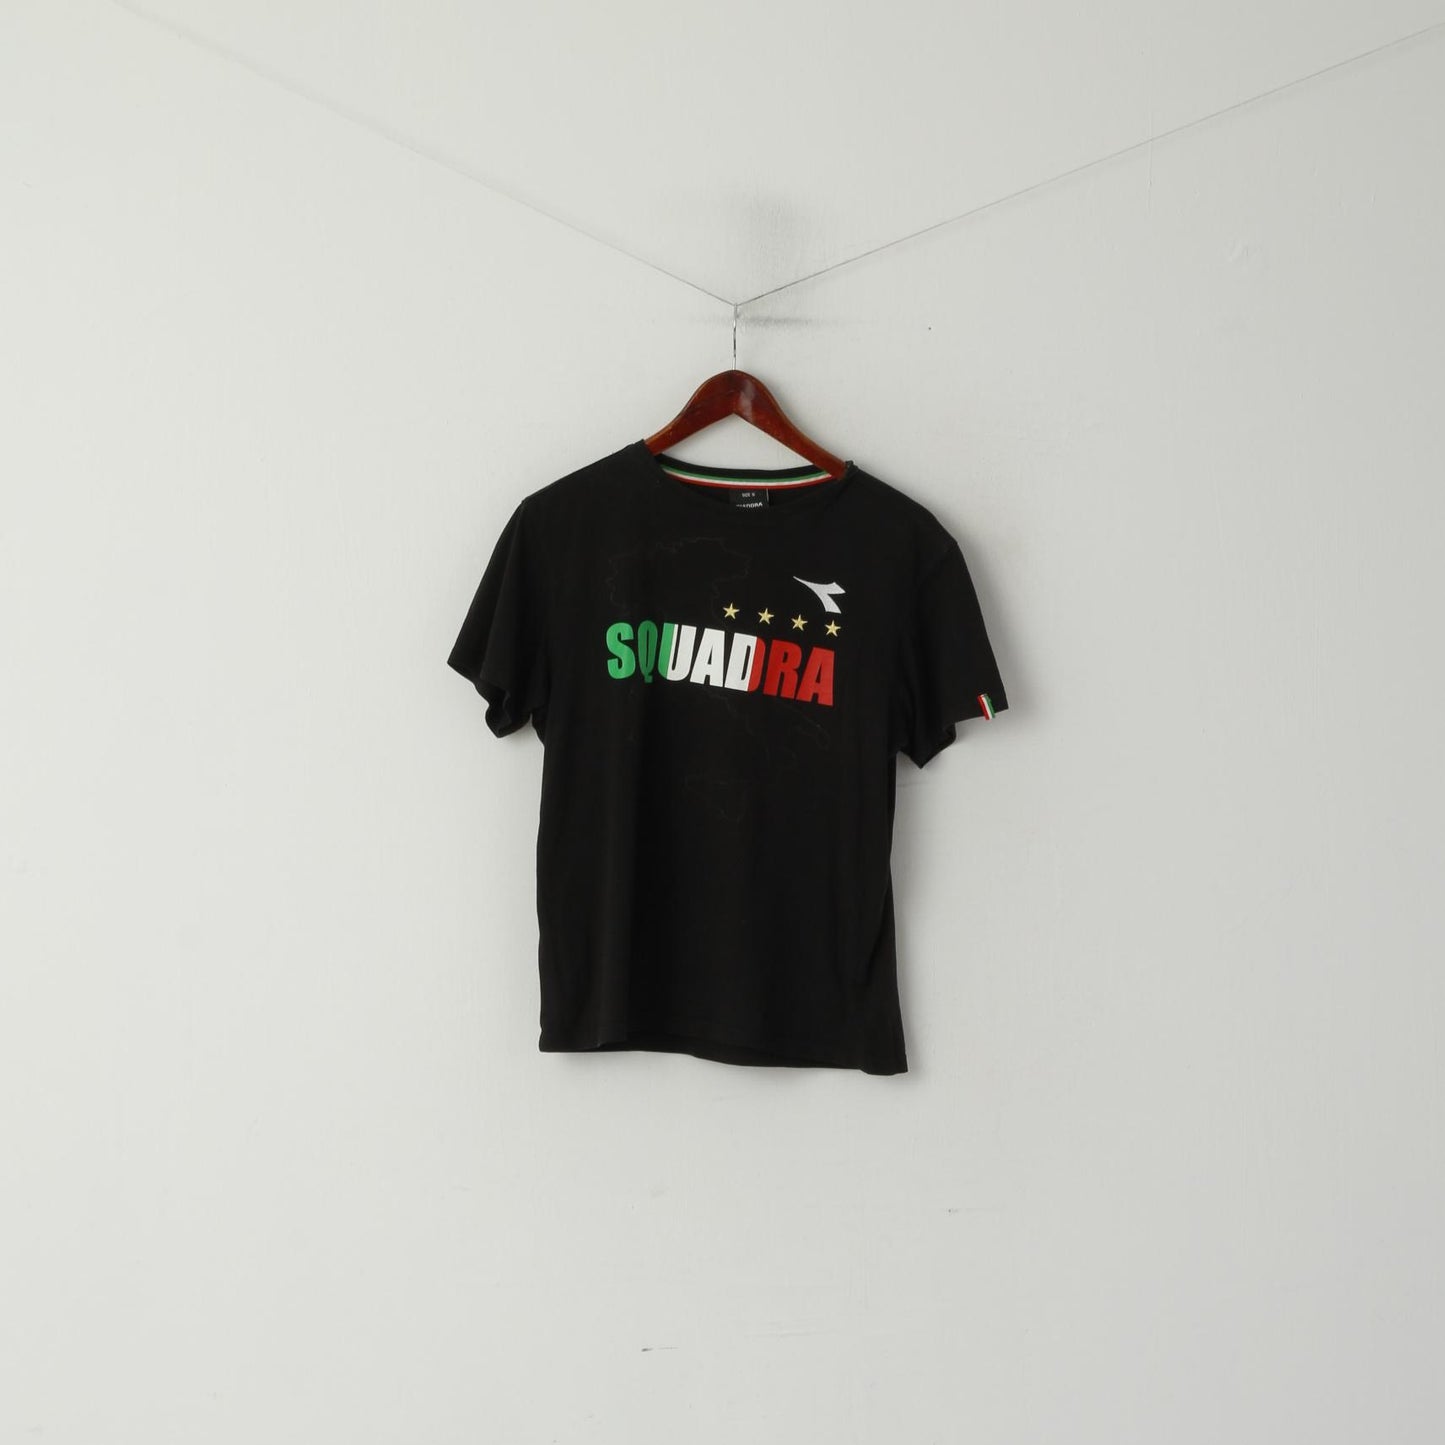 Diadora Women S Shirt Black Cotton Squadra Italy Stretch Sport Top